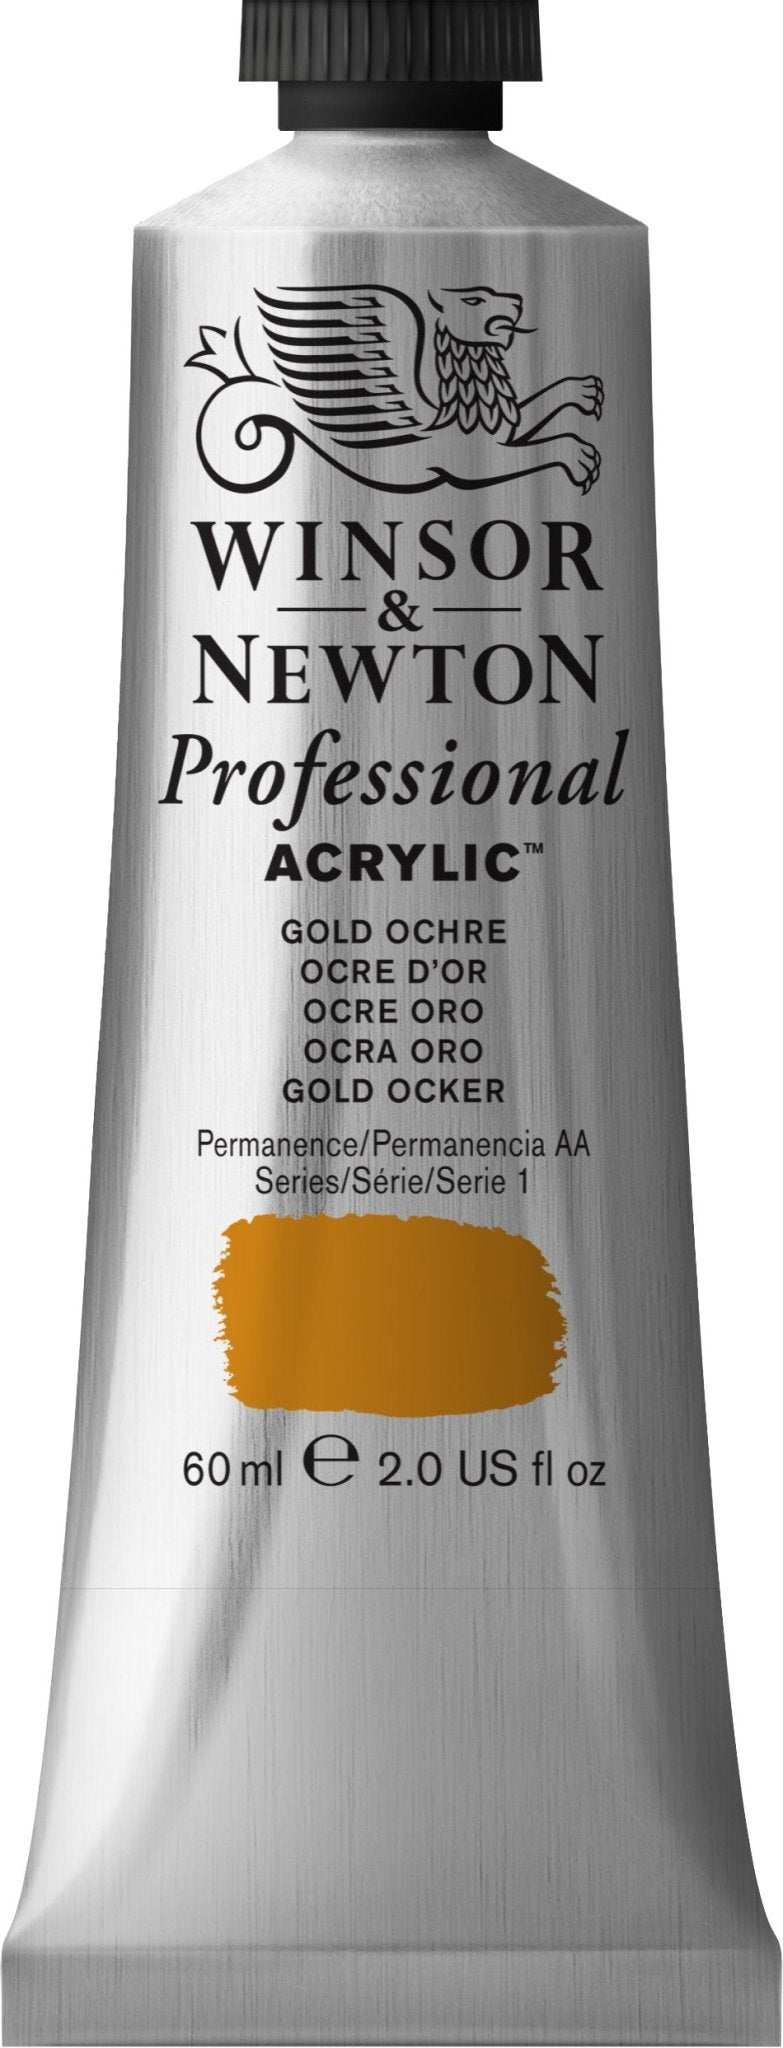 W & N Professional Acrylic 60ml Gold Ochre - theartshop.com.au